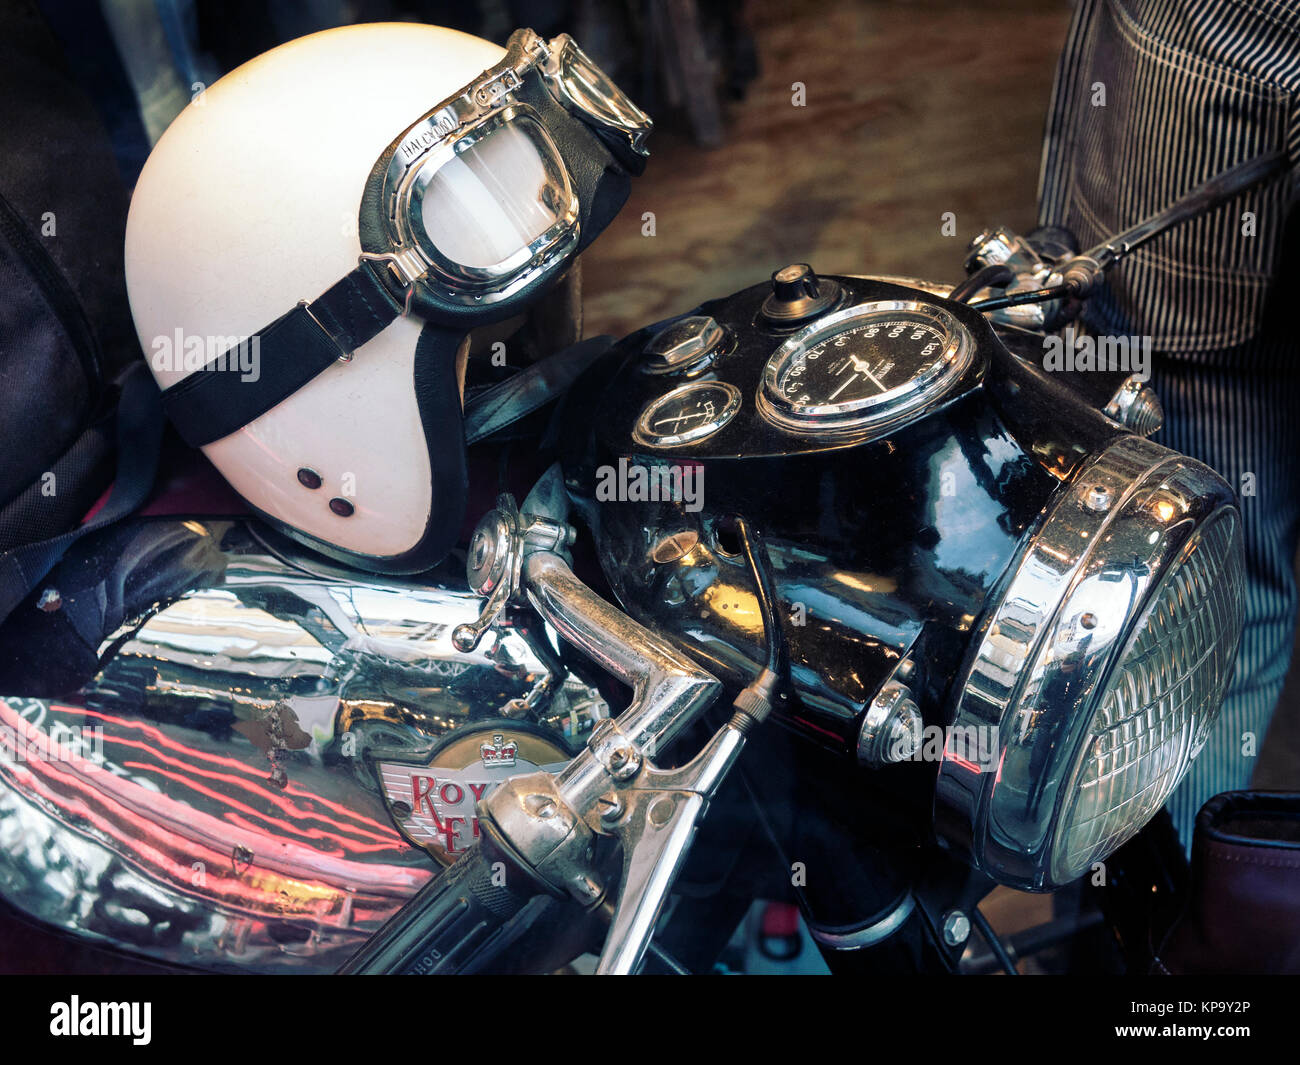 Royal Enfield motociclo con il classico casco sul serbatoio della benzina Foto Stock